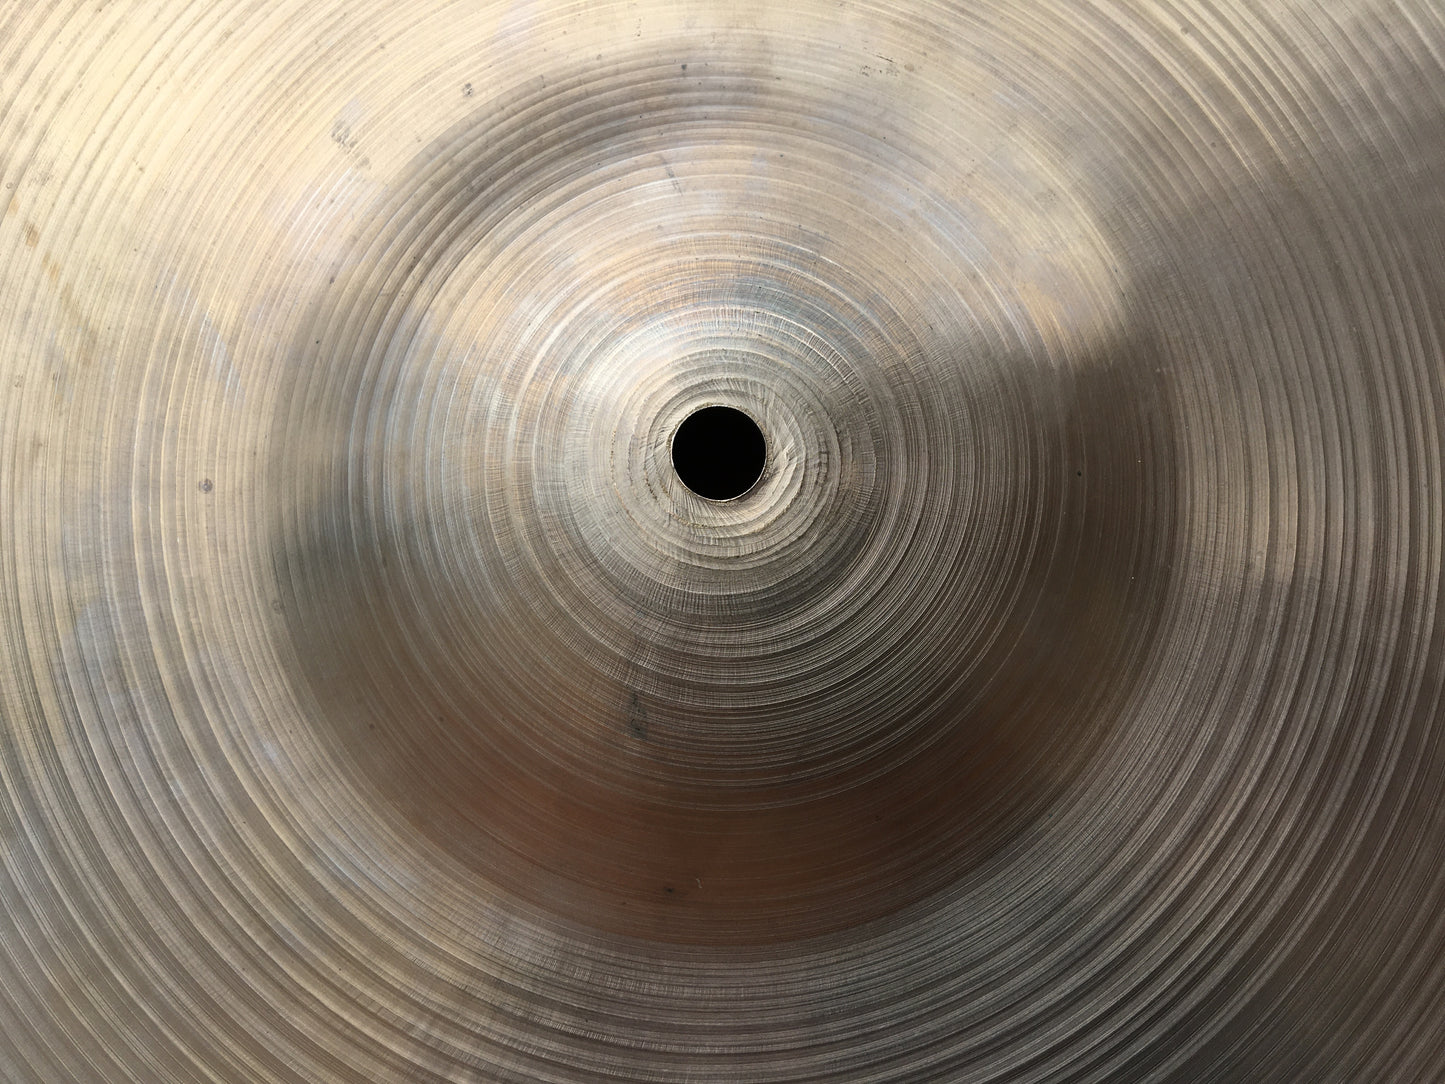 22" 1960s Zildjian A Ride Cymbal 2466g #619